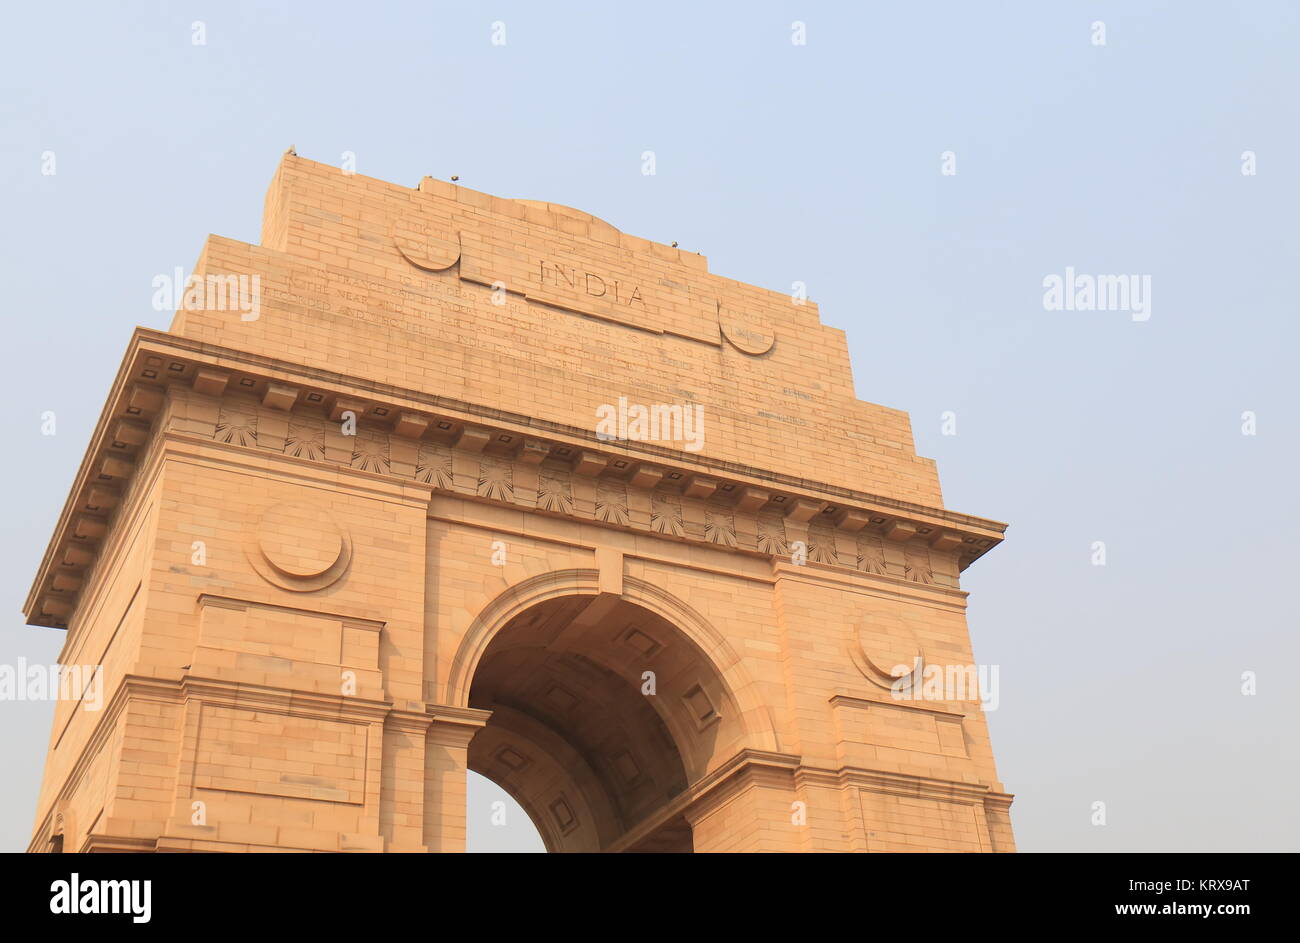 L'architecture historique de la porte de l'Inde New Delhi Inde Banque D'Images